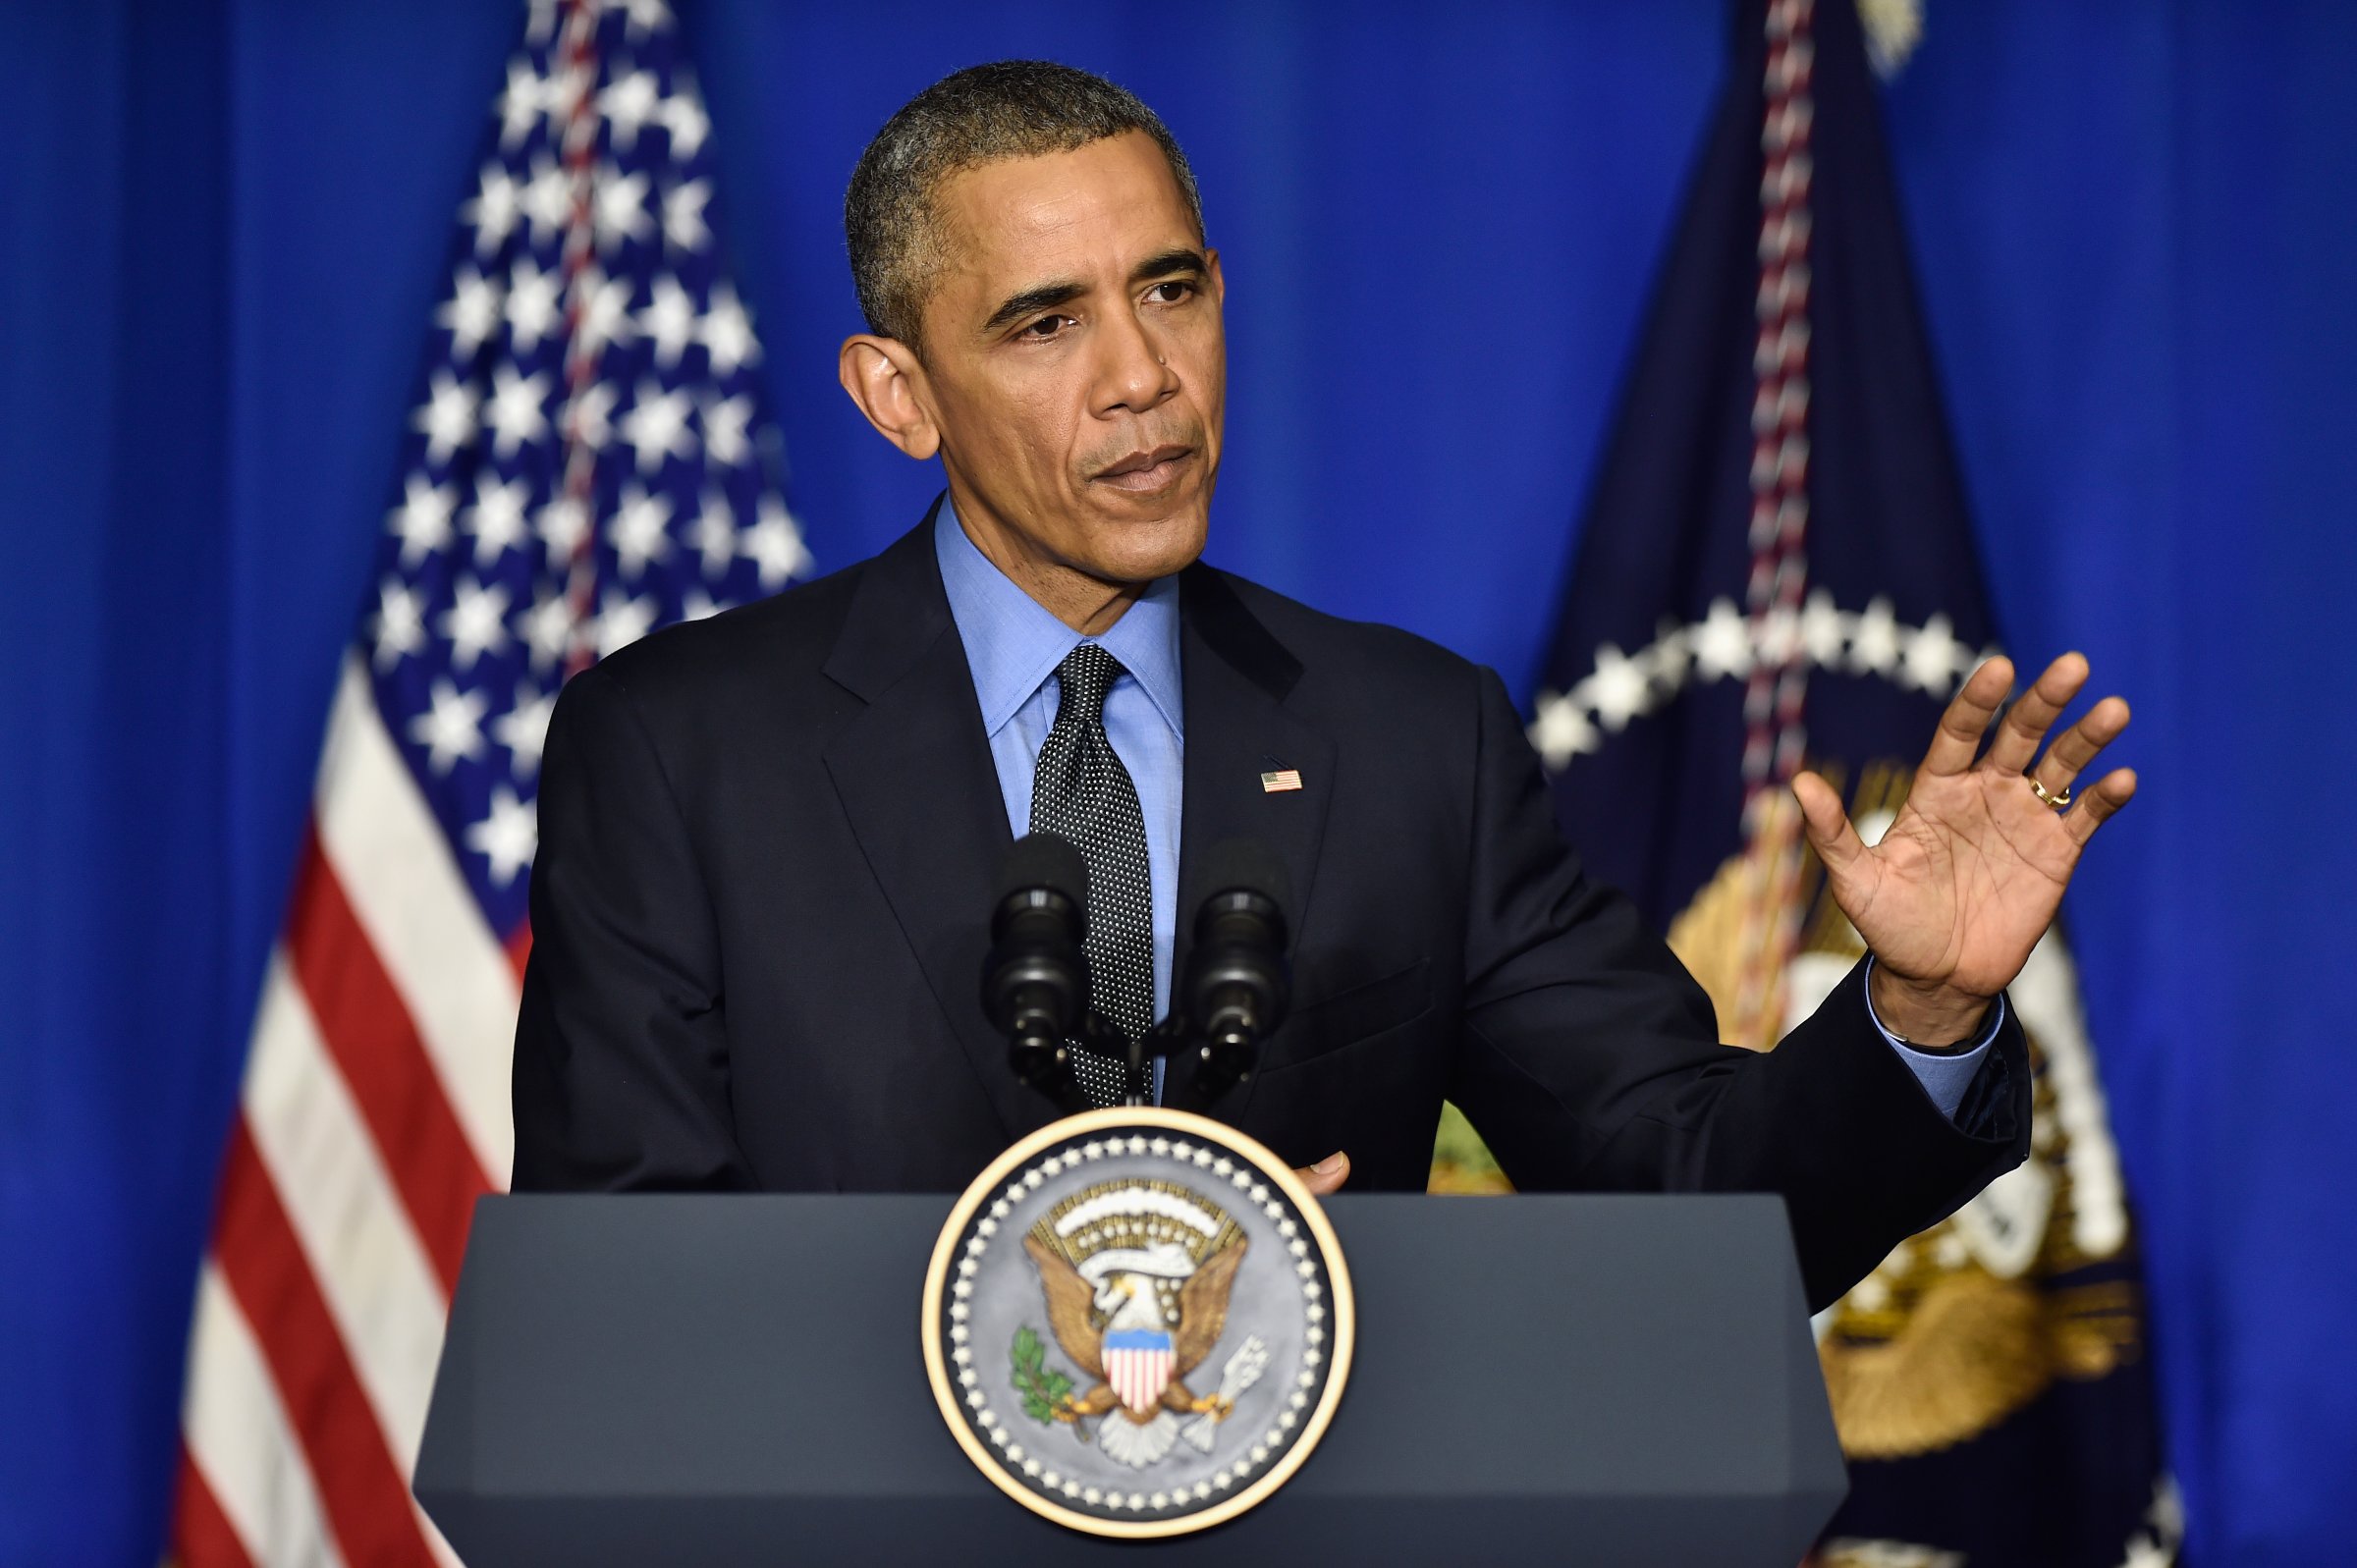 Obama Speaks Before Leaving COP21